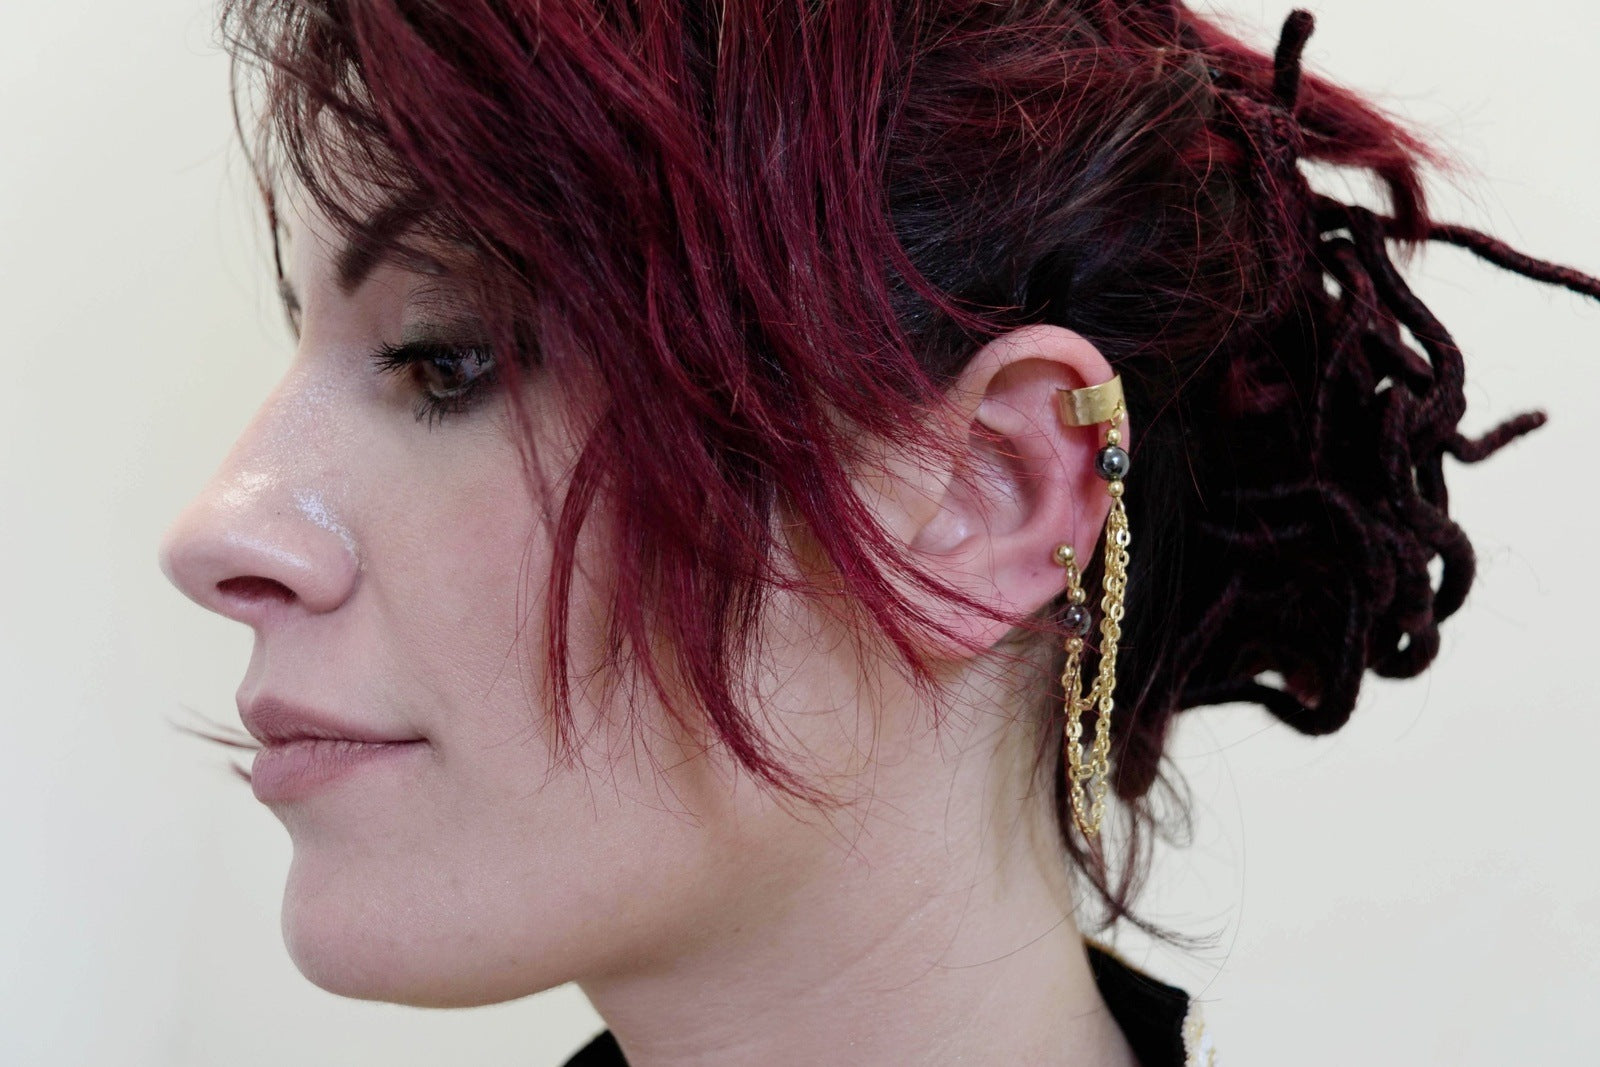 Hematite Golden Chains Link Ear Cuff Single Earrings Vintage Jewelry